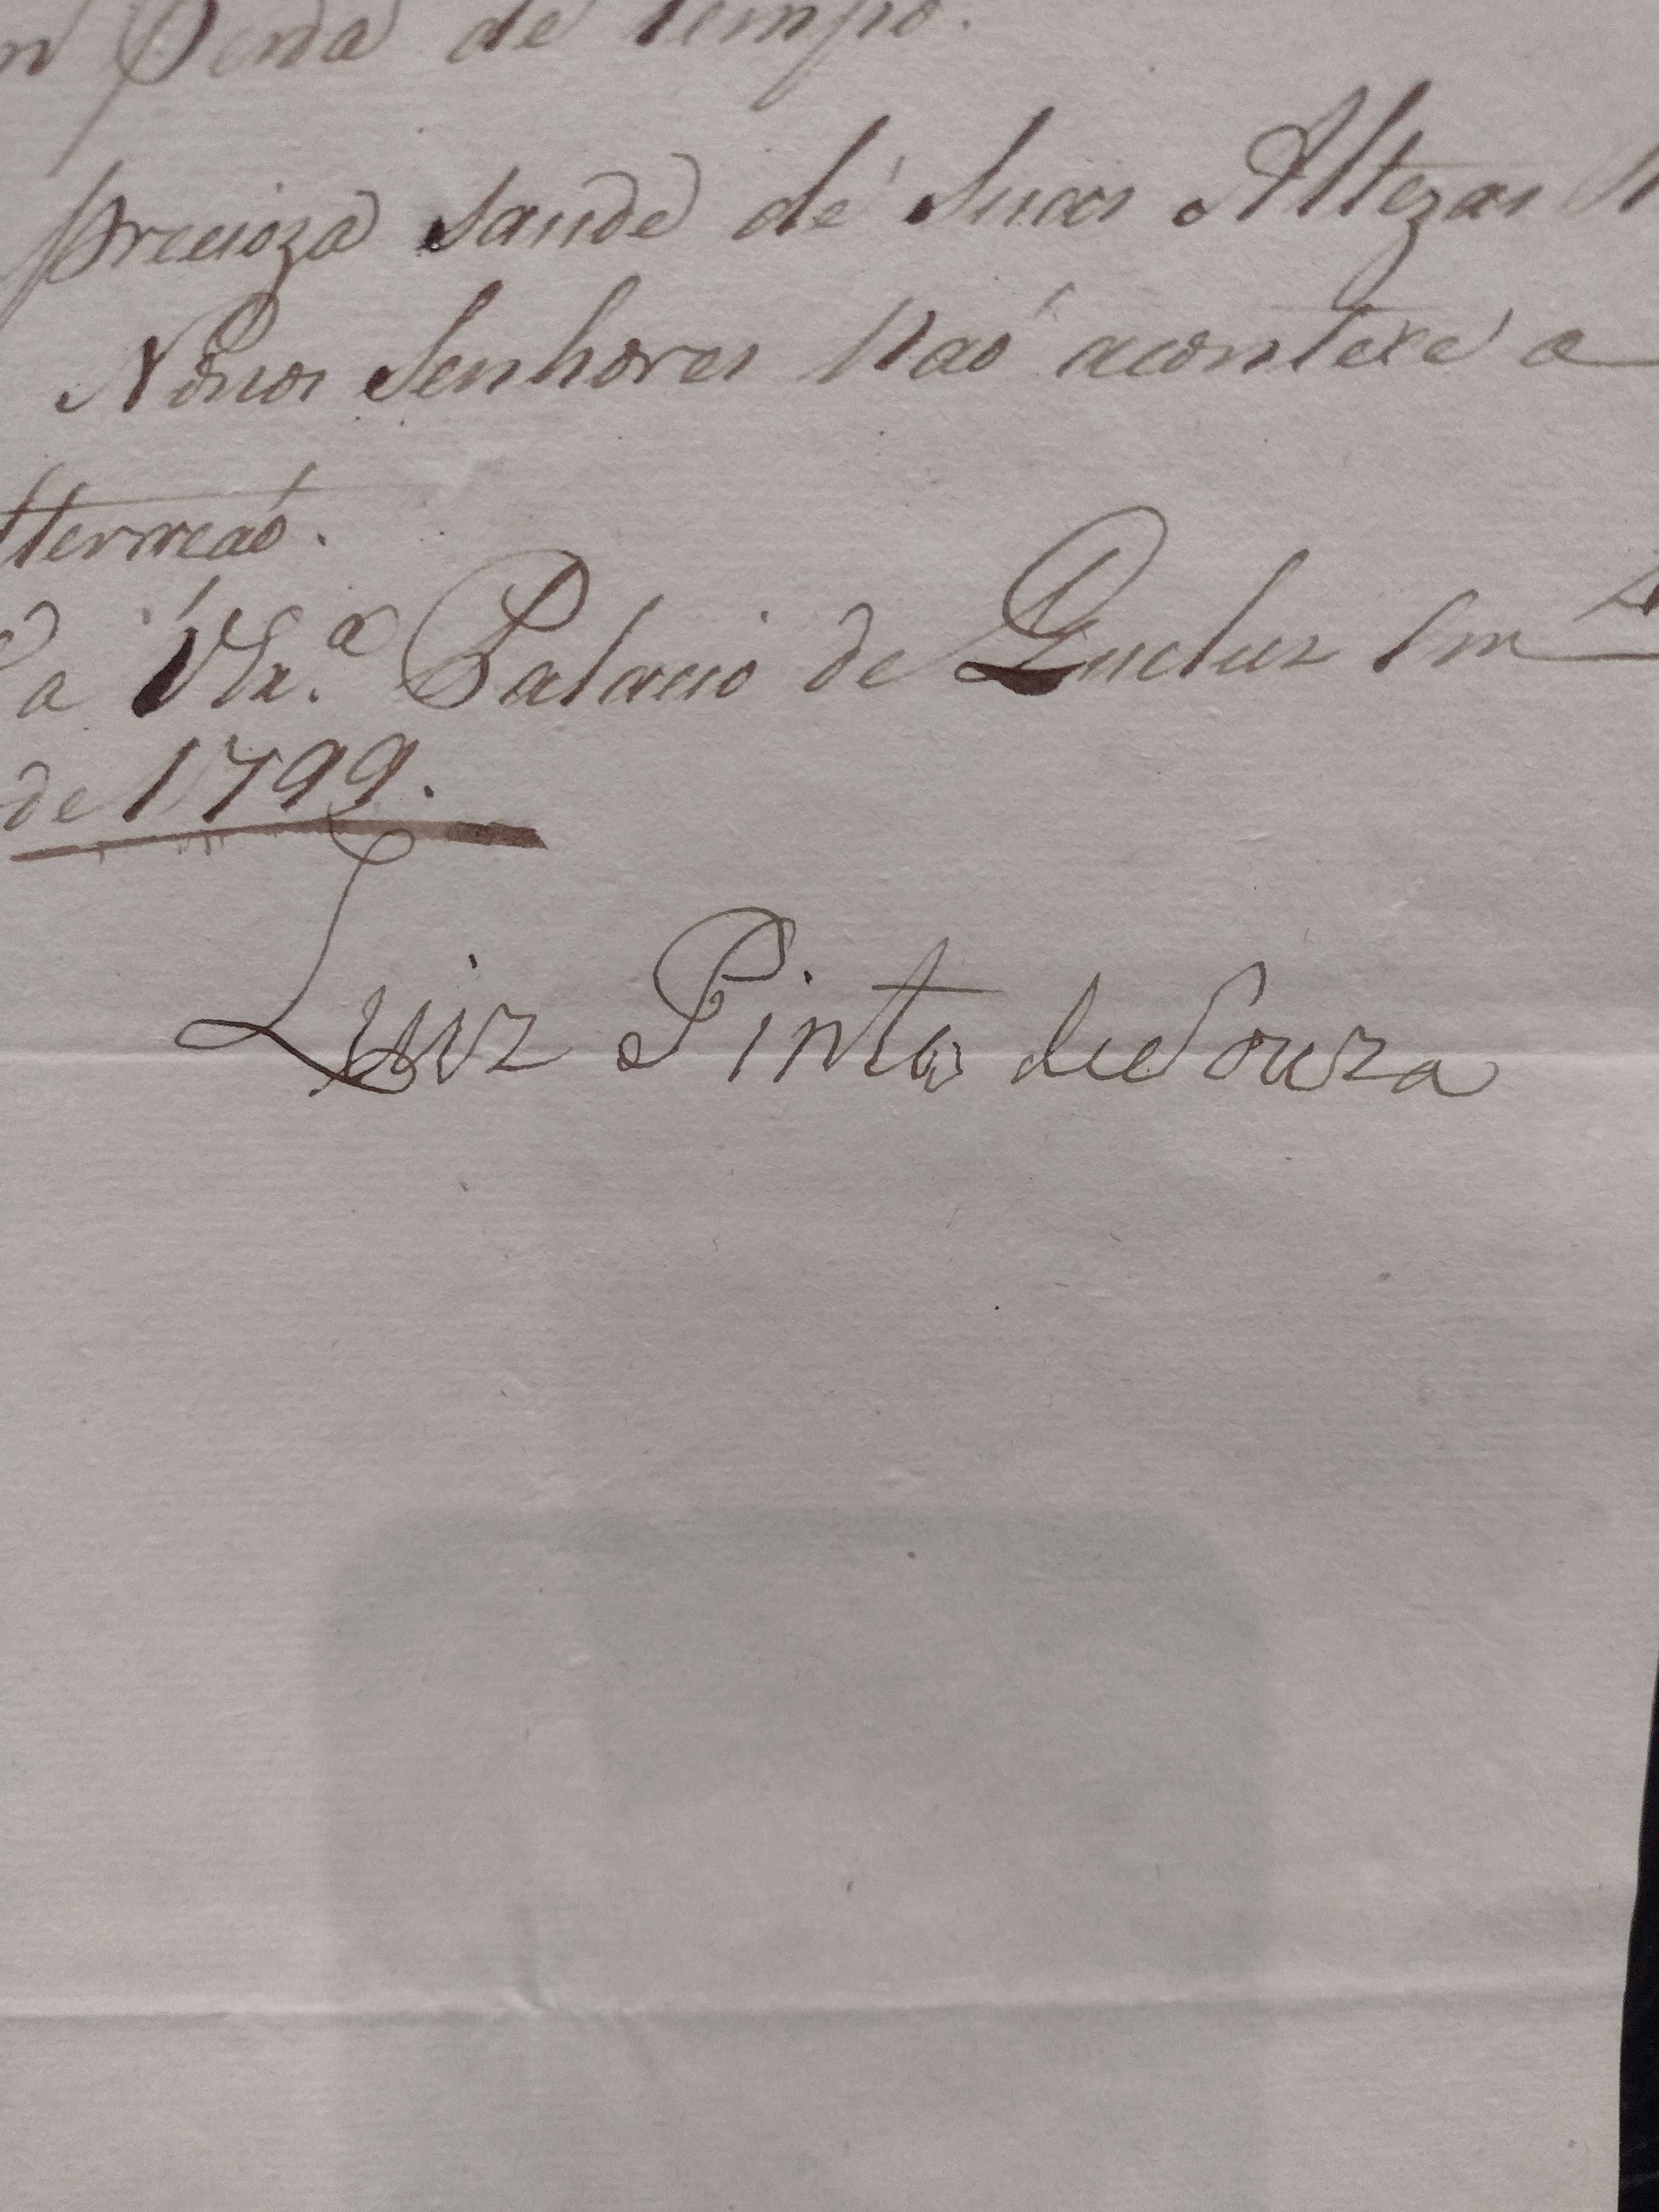 Manuscrito "Diogo de Carvalho e Sampayo 1799